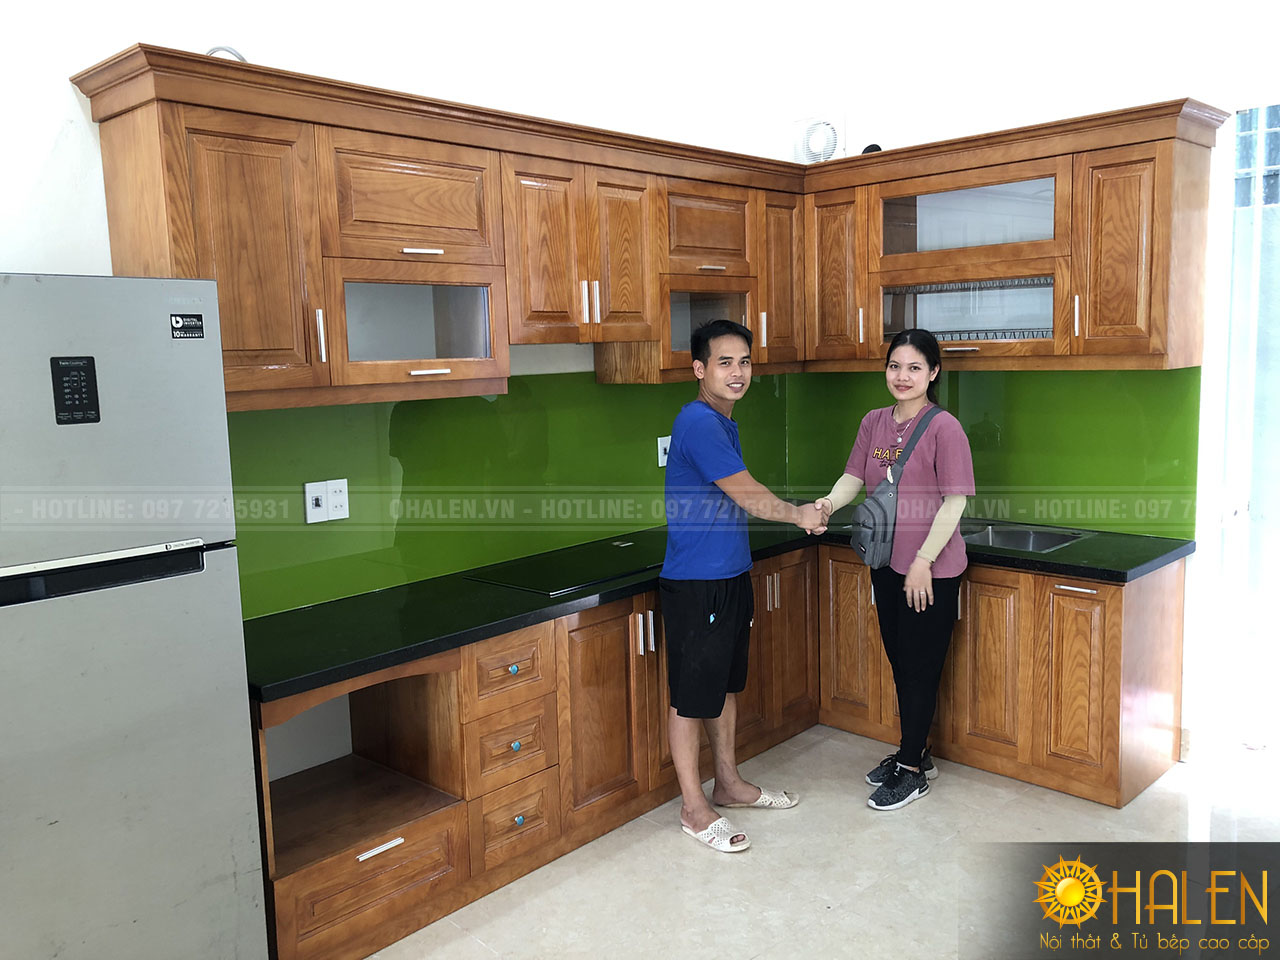 Hình ảnh khách hàng hài lòng với sản phẩm tủ bếp gỗ đẹp của nội thất OHALEN